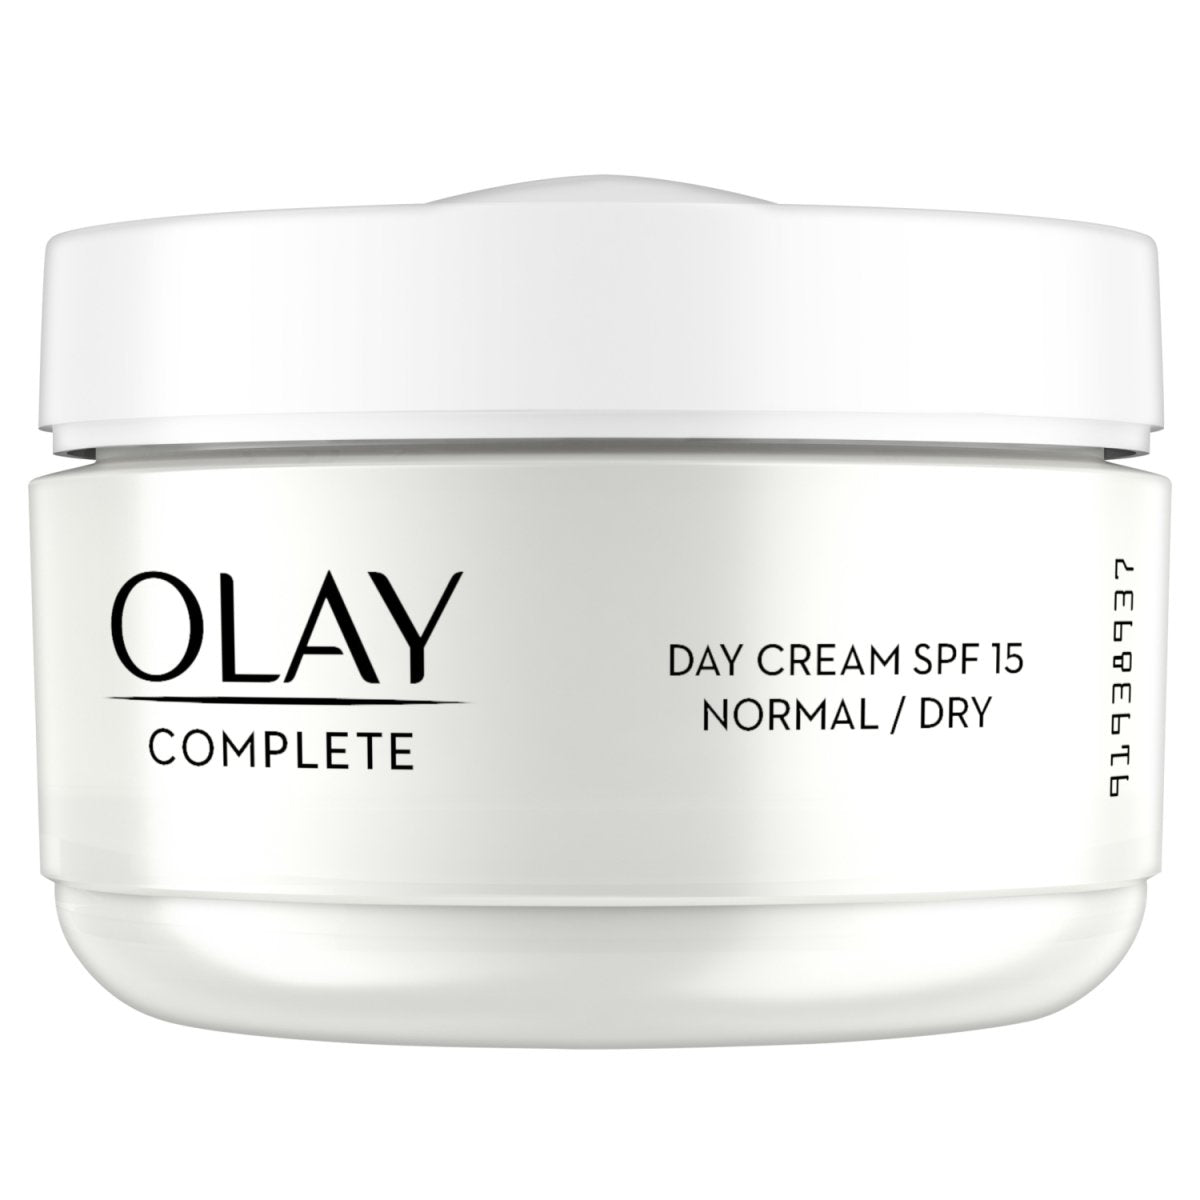 Olay Complete Care Cream Regular - Intamarque 5000174394948